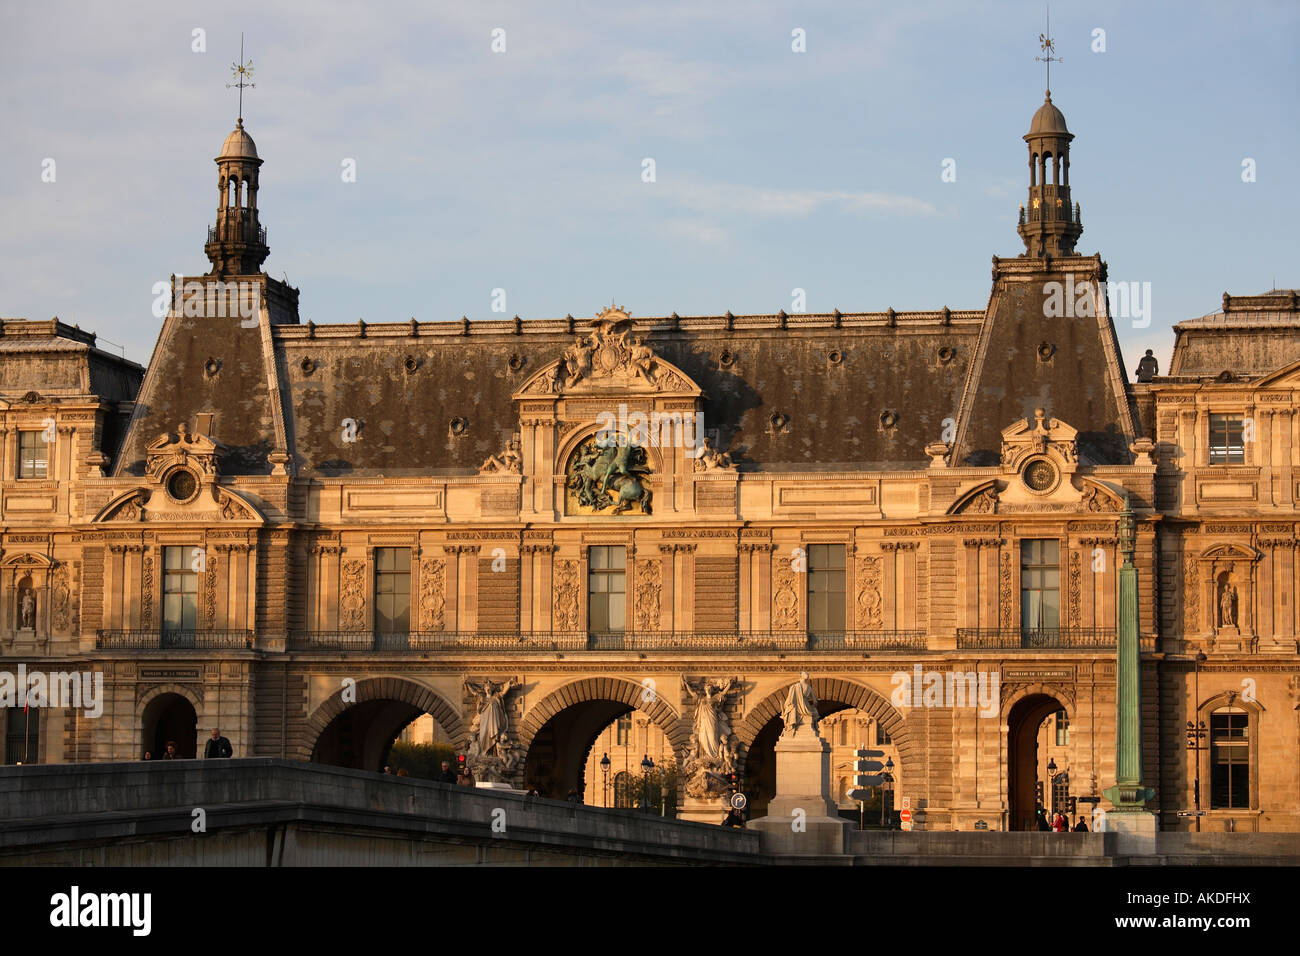 France Paris Le Louvre palace museum Stock Photo